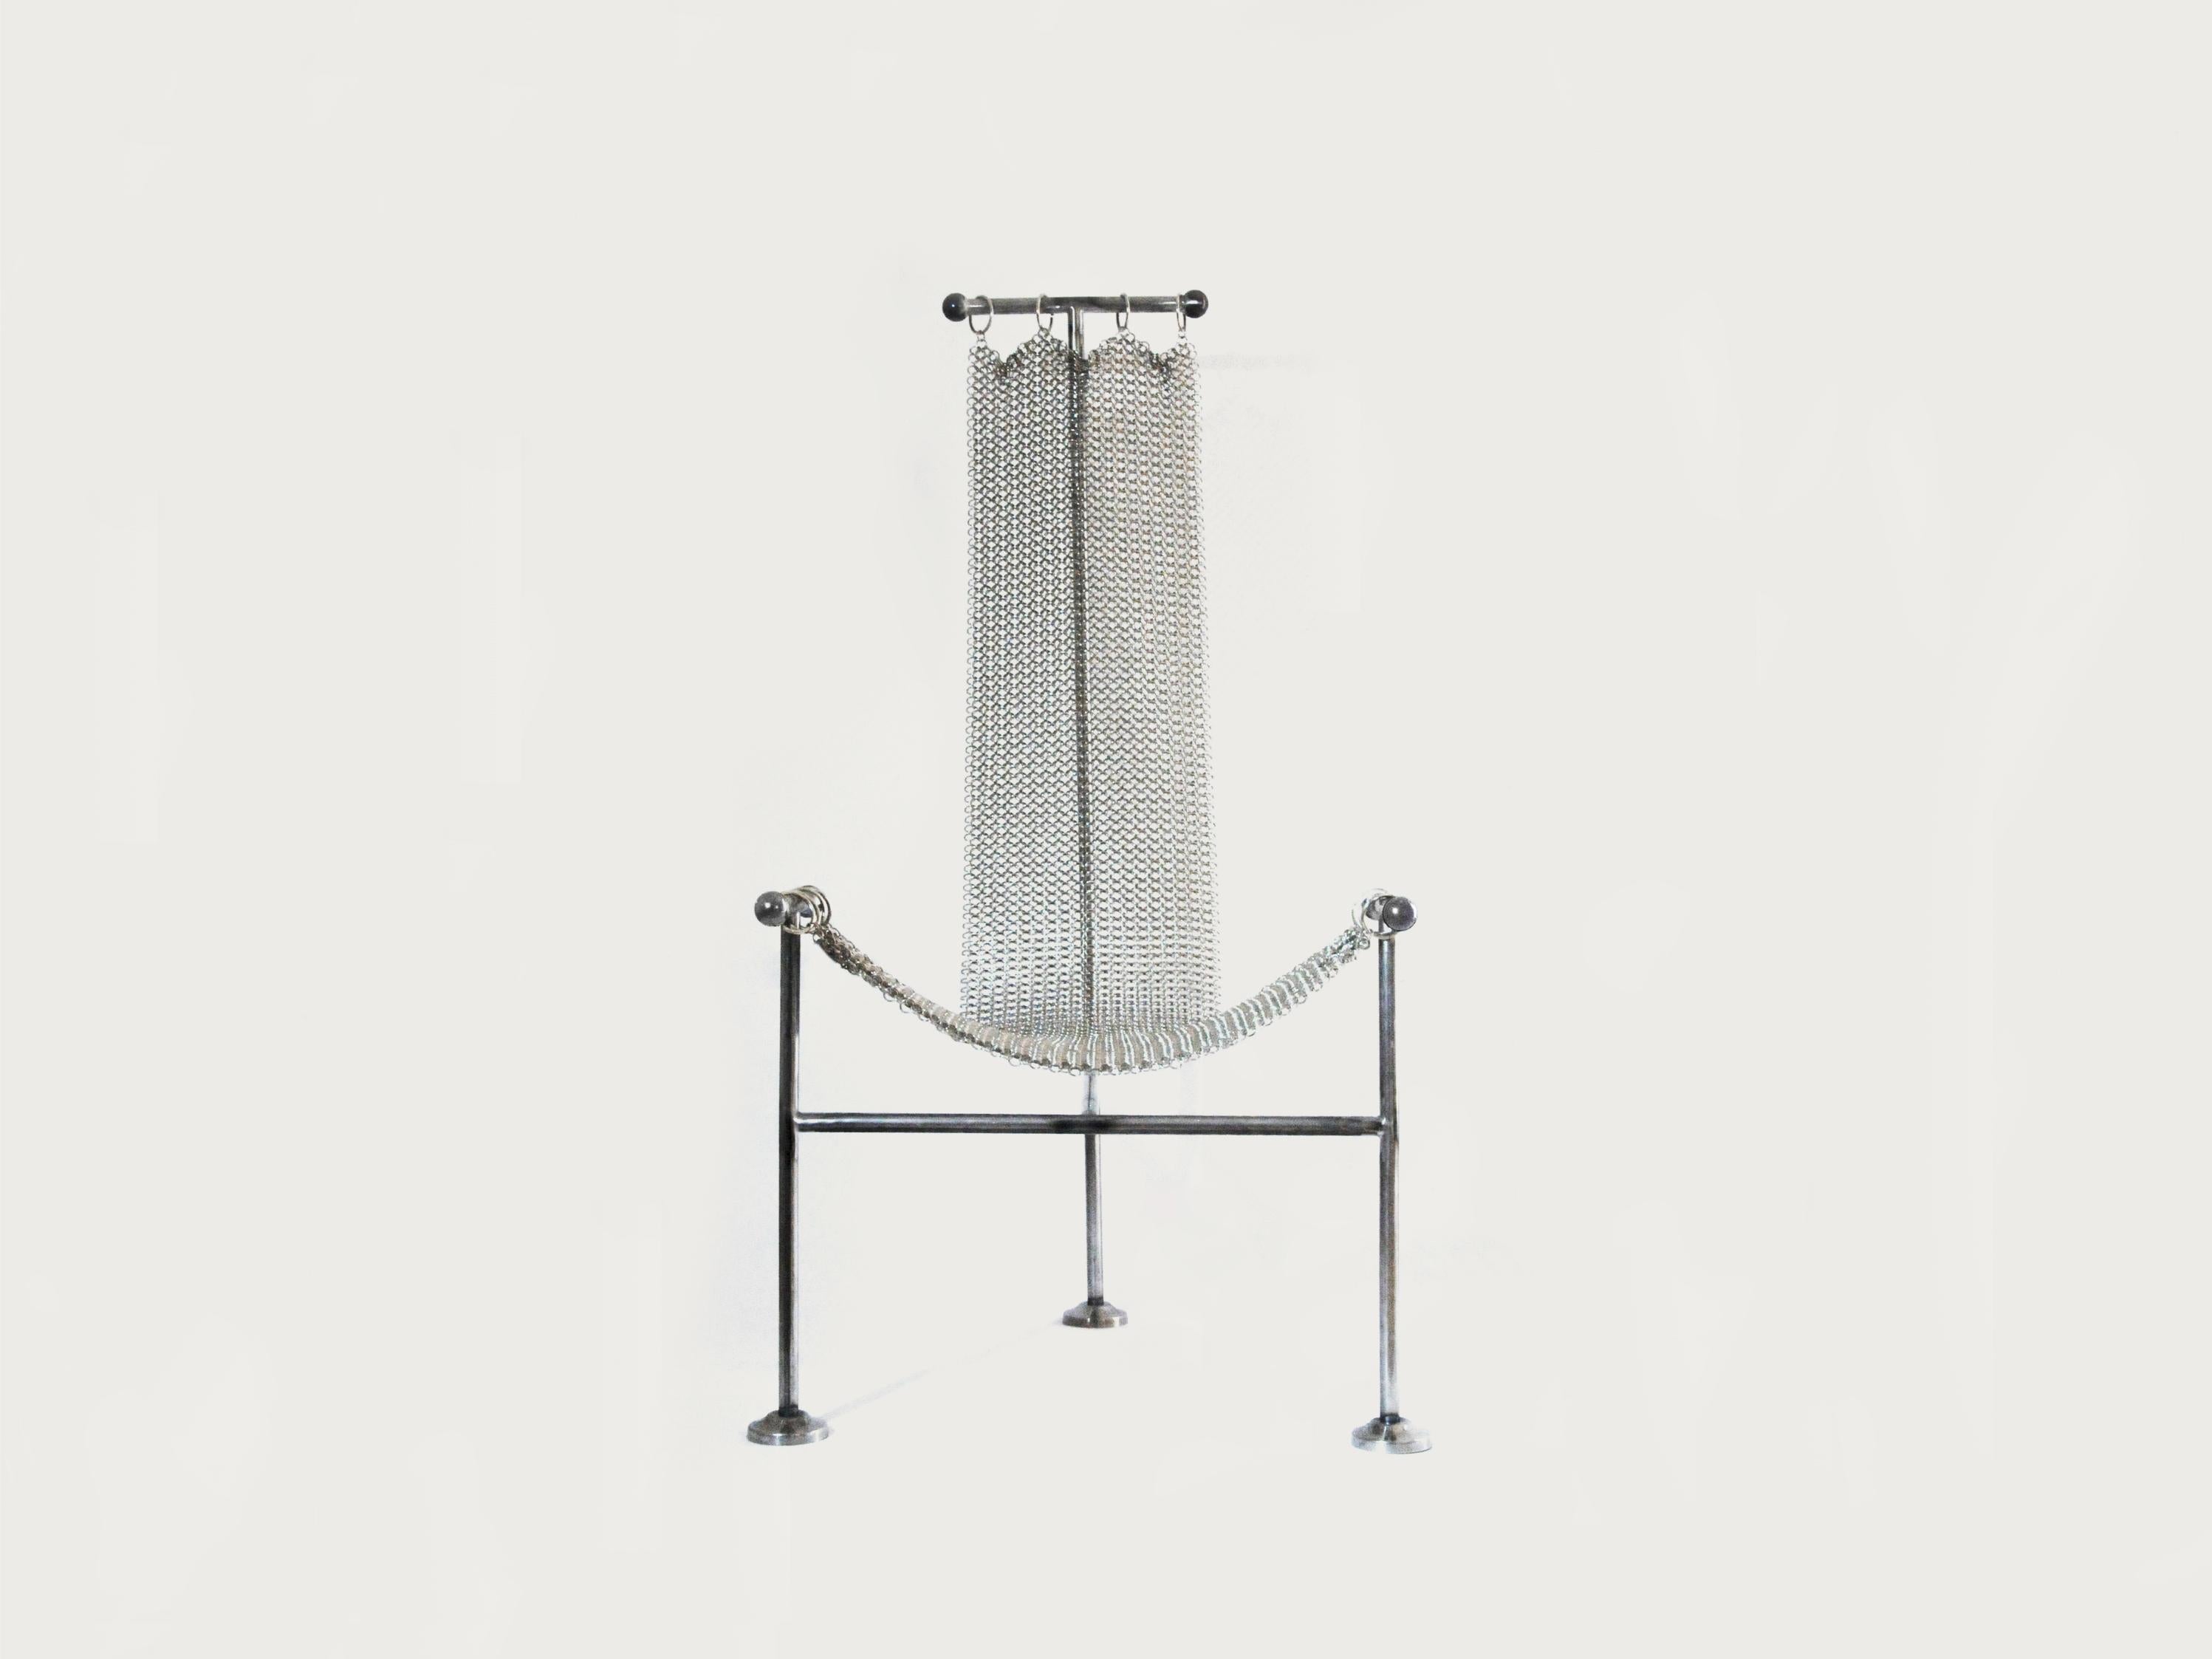 Chaise en cotte de mailles de Panorammma
Matériaux : acier, nickelage
Dimensions : 120 x 60 x 60 cm : 120 x 60 x 60 cm

Panorammma est un atelier de conception de meubles basé à Mexico qui cherche à redéfinir notre relation aux objets